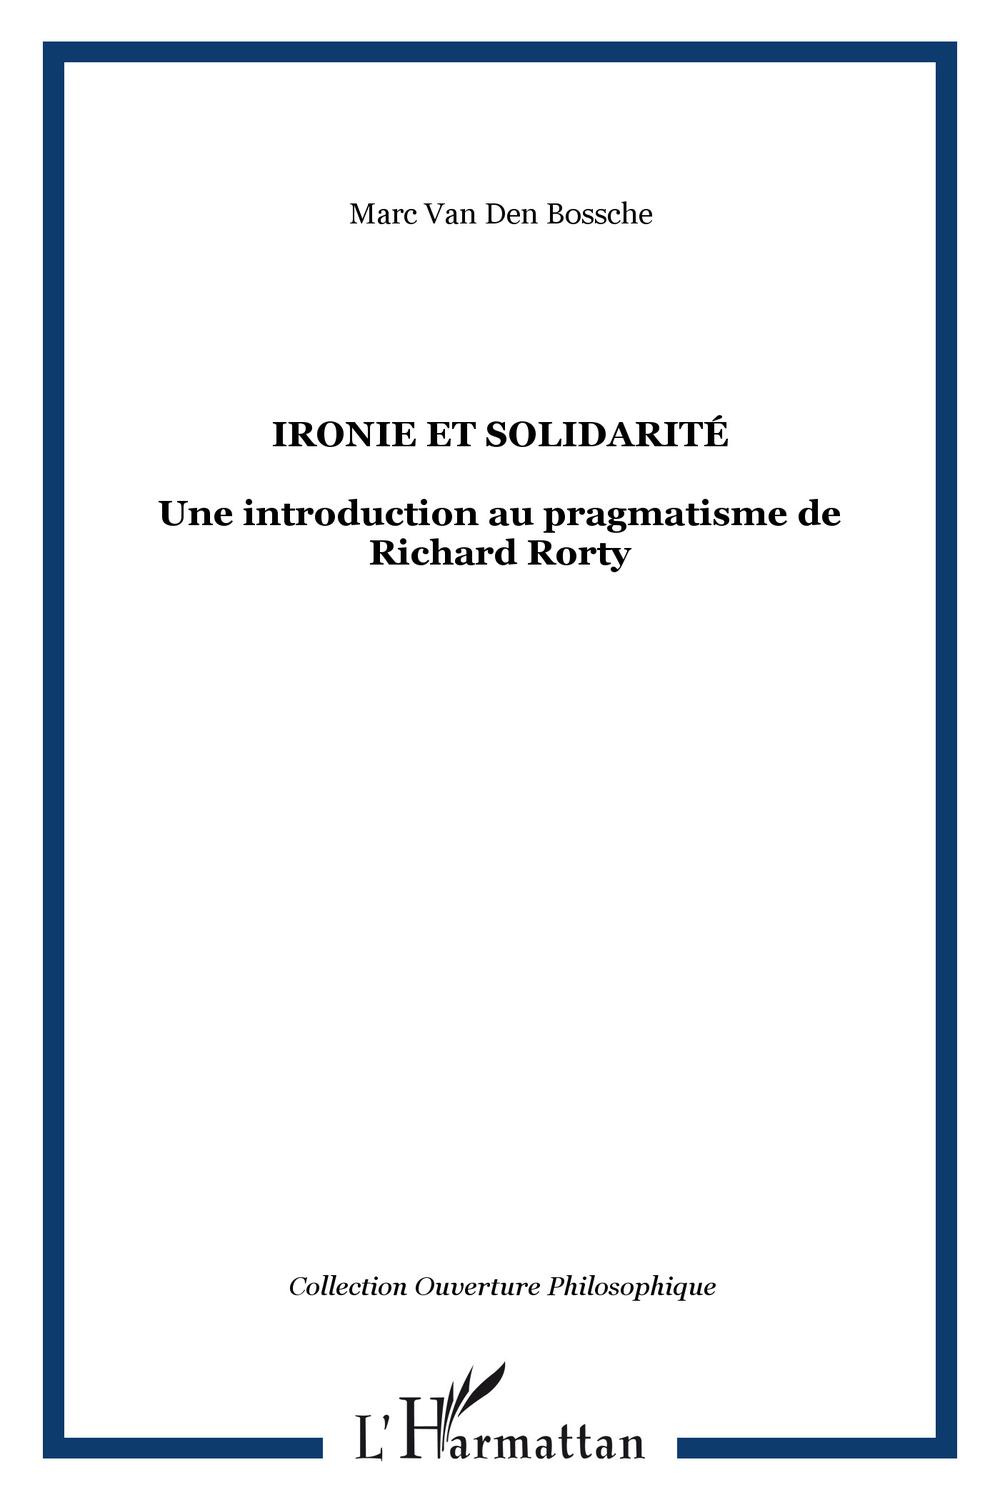 Ironie et solidarité - Marc Van Den Bossche